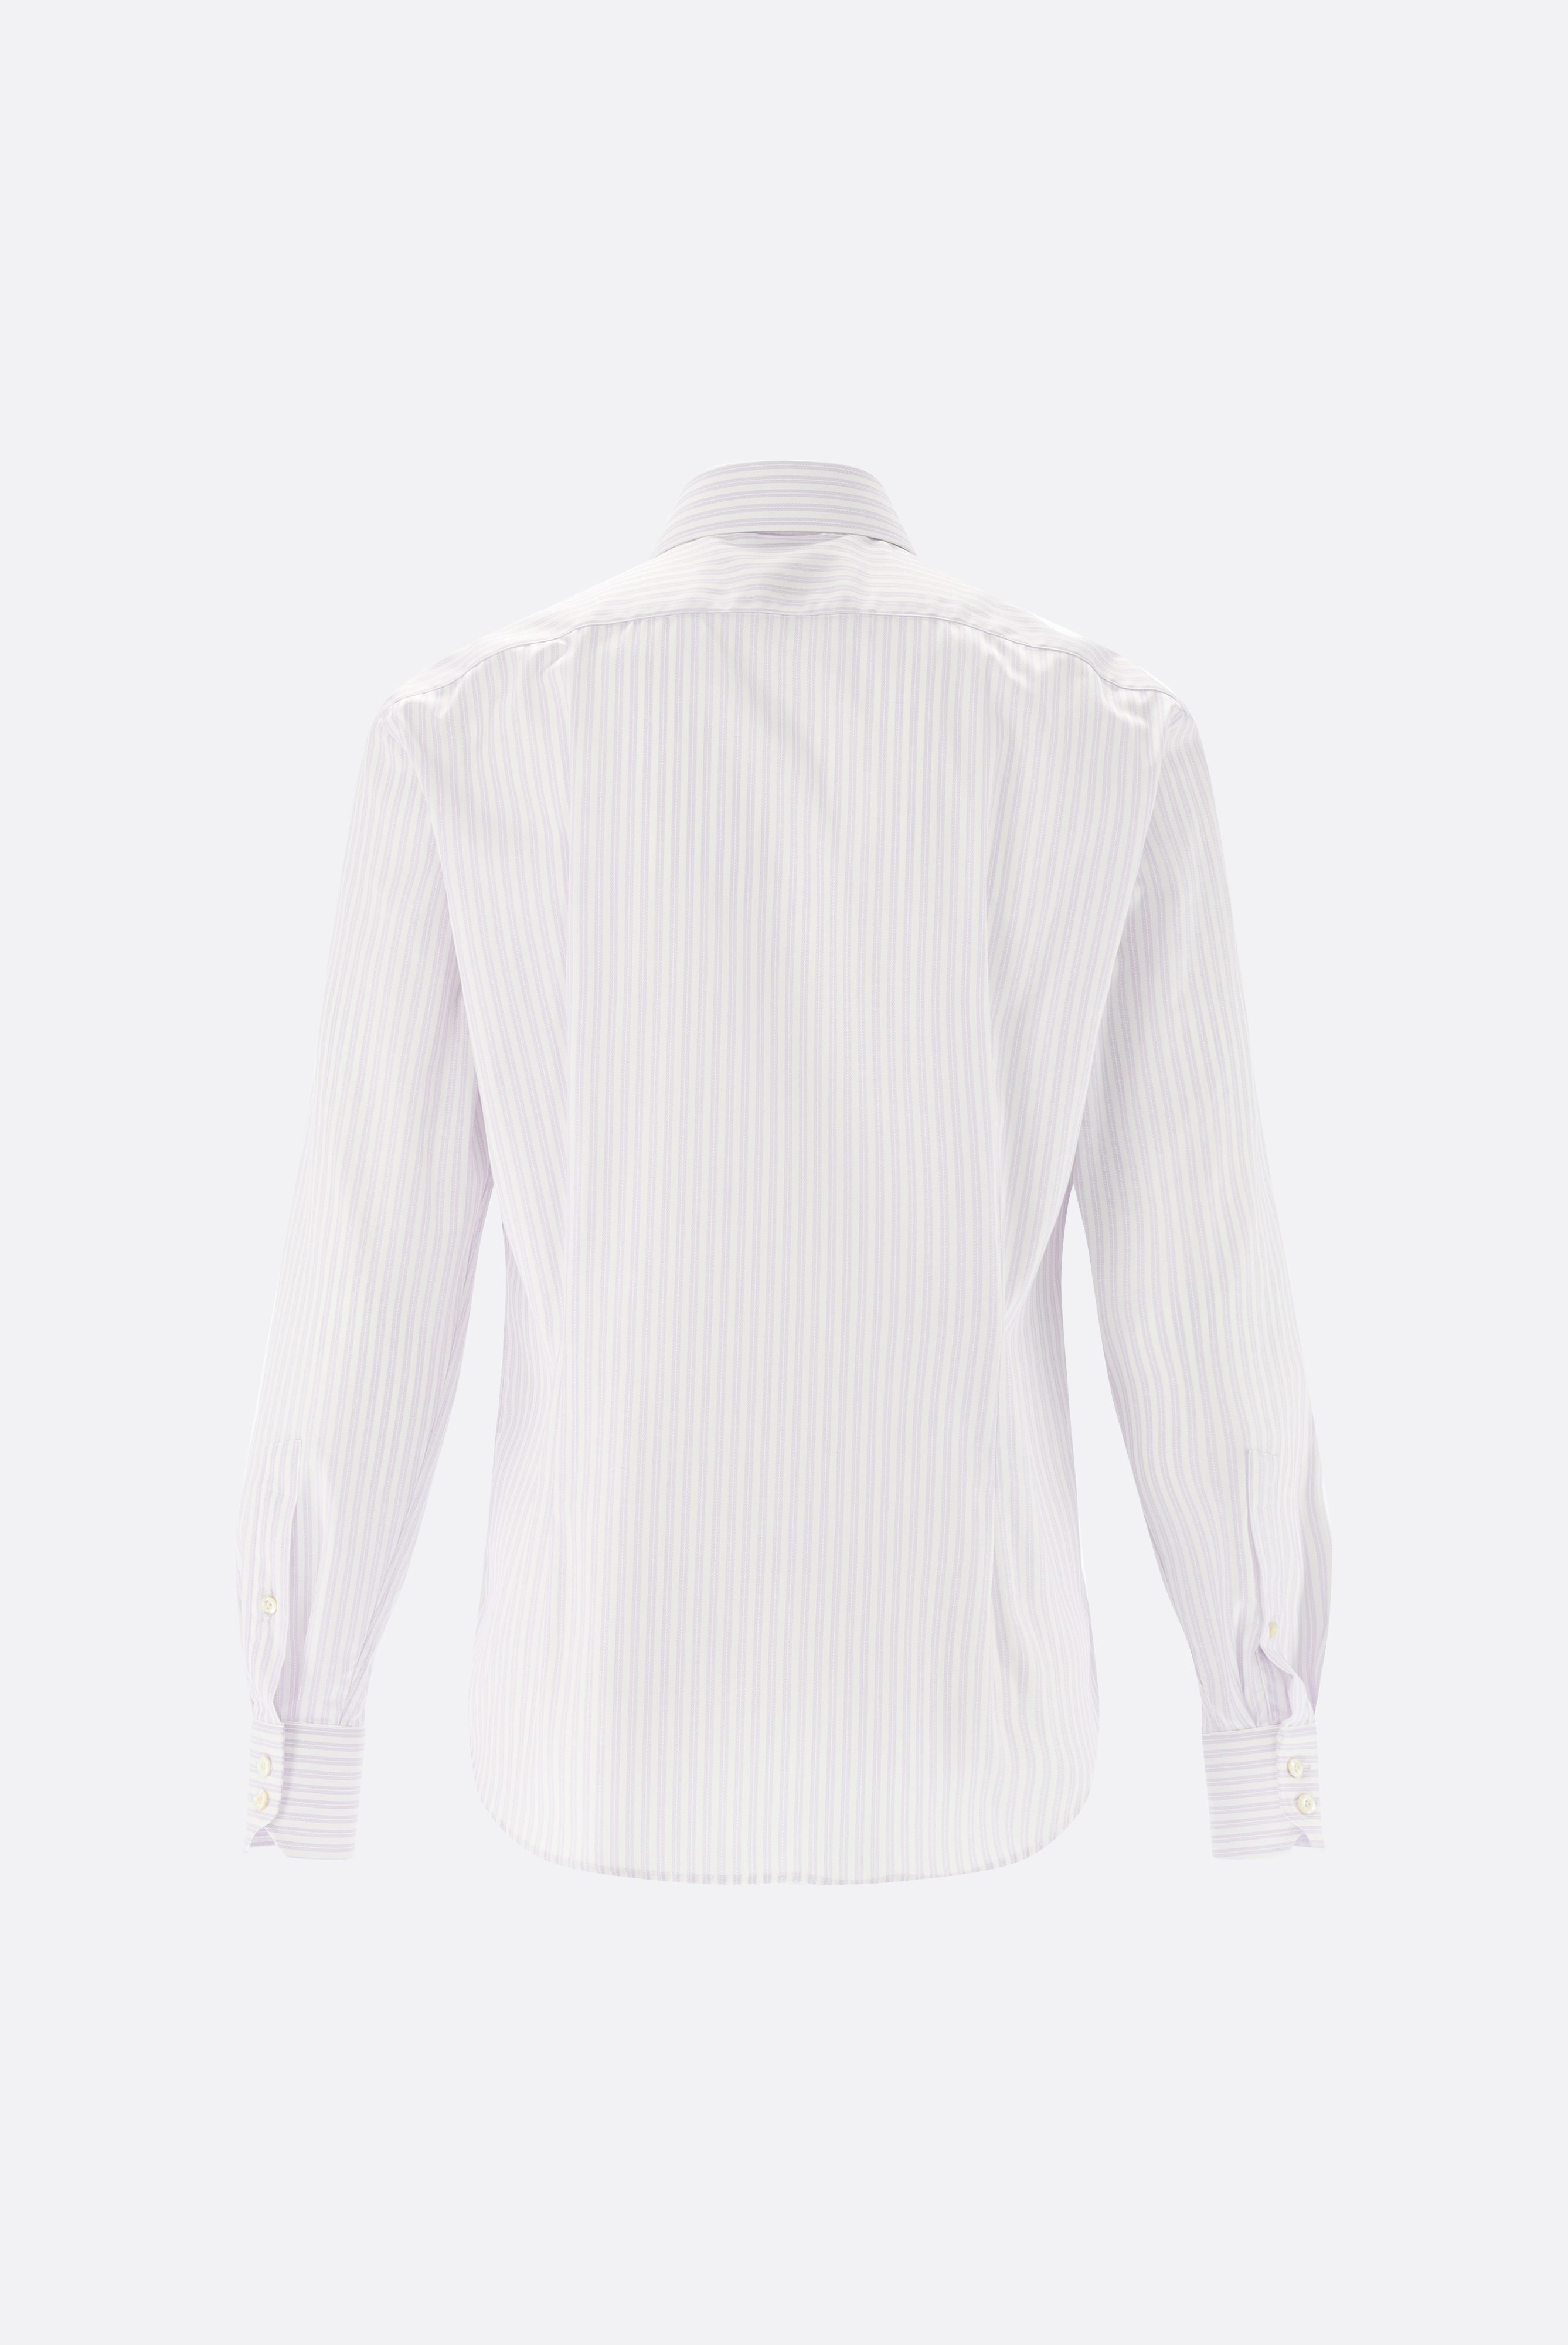 Bügelleichte Hemden+Bügelfreies Hemd mit Streifen Slim Fit+20.2019.BQ.161106.006.44